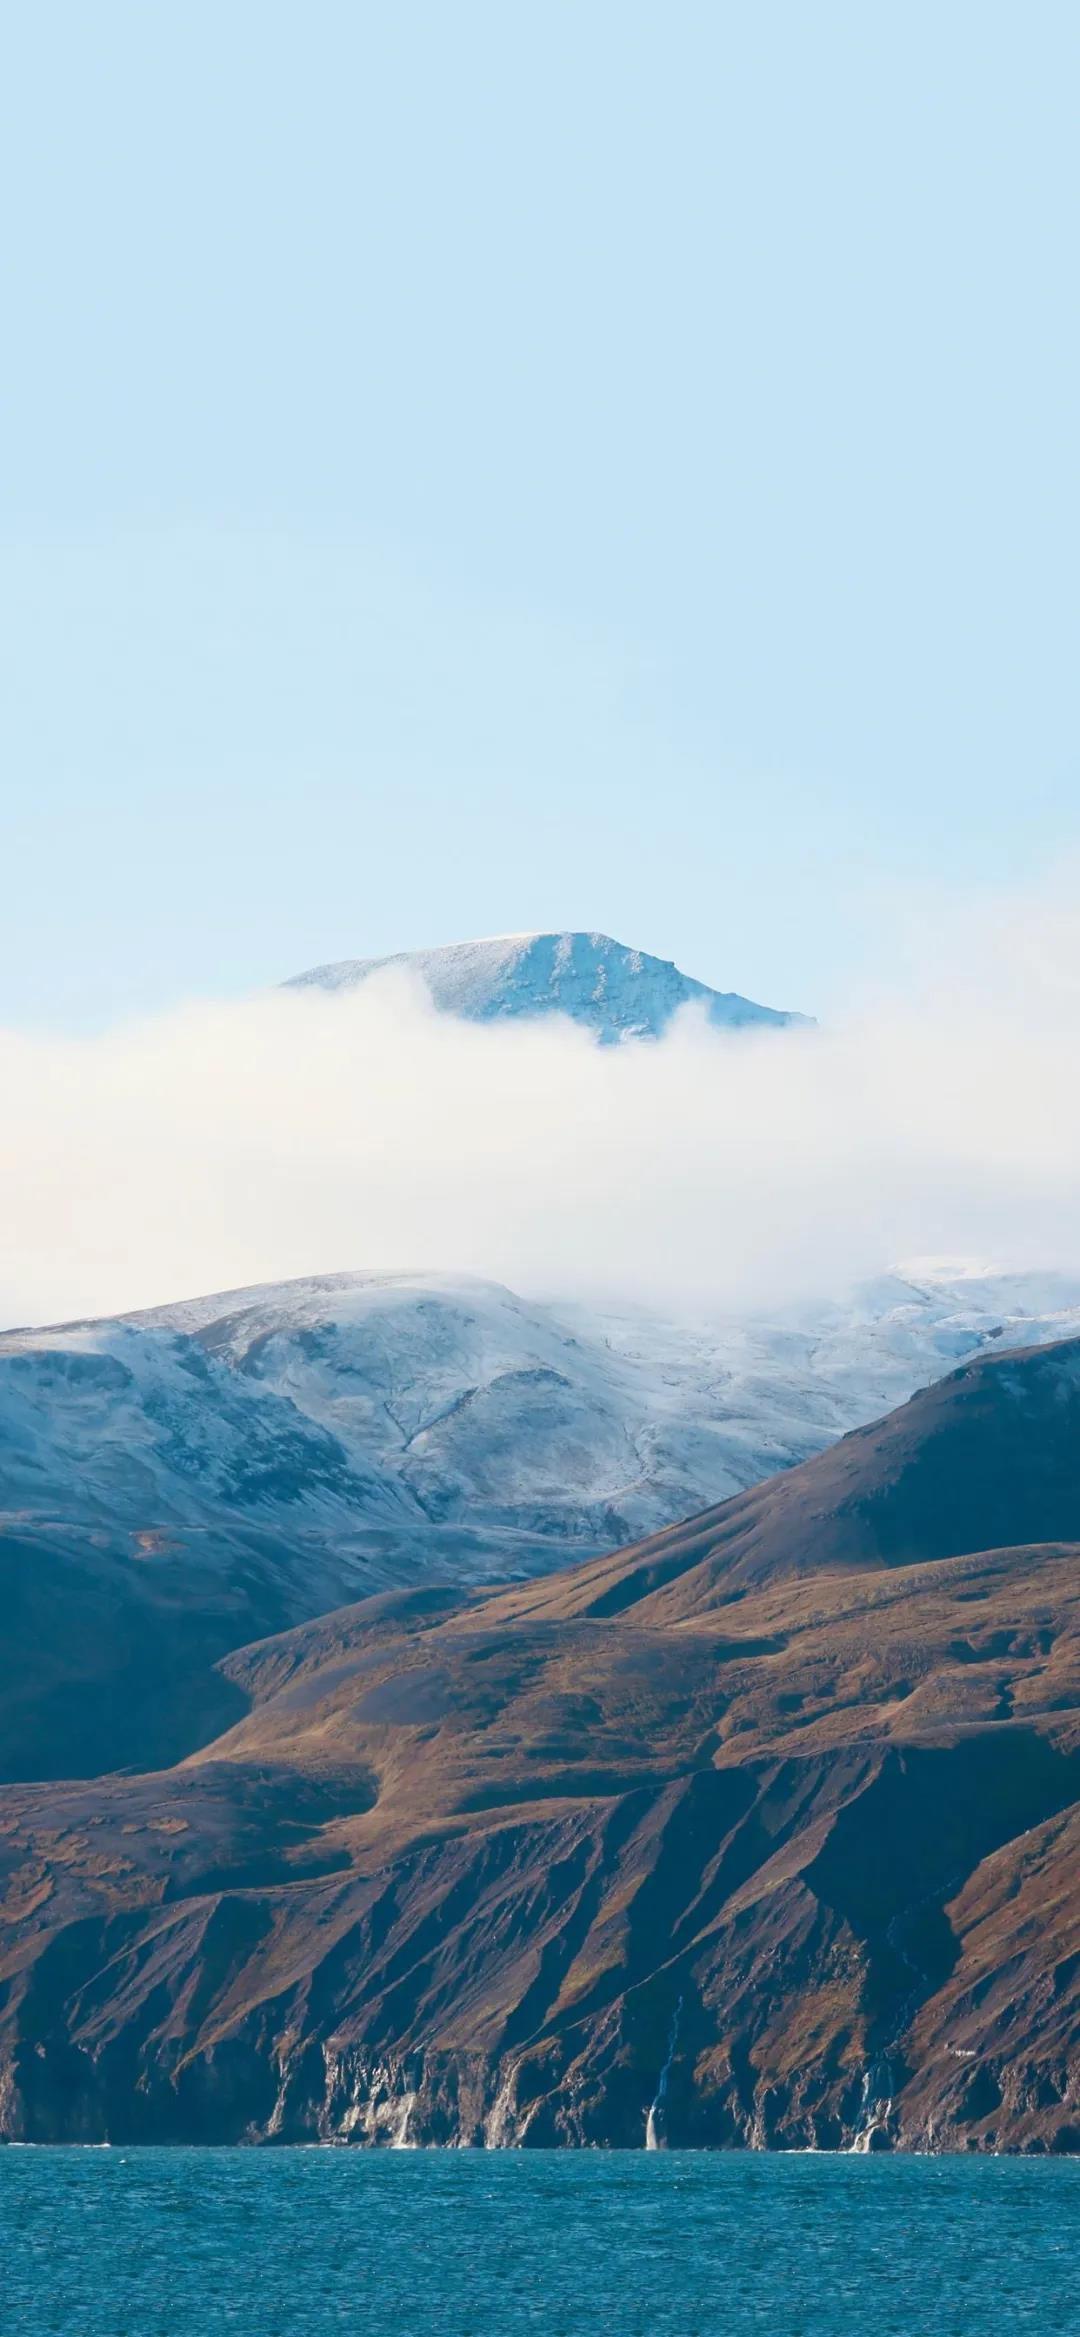 云雾缭绕的山峰唯美风景手机壁纸图片